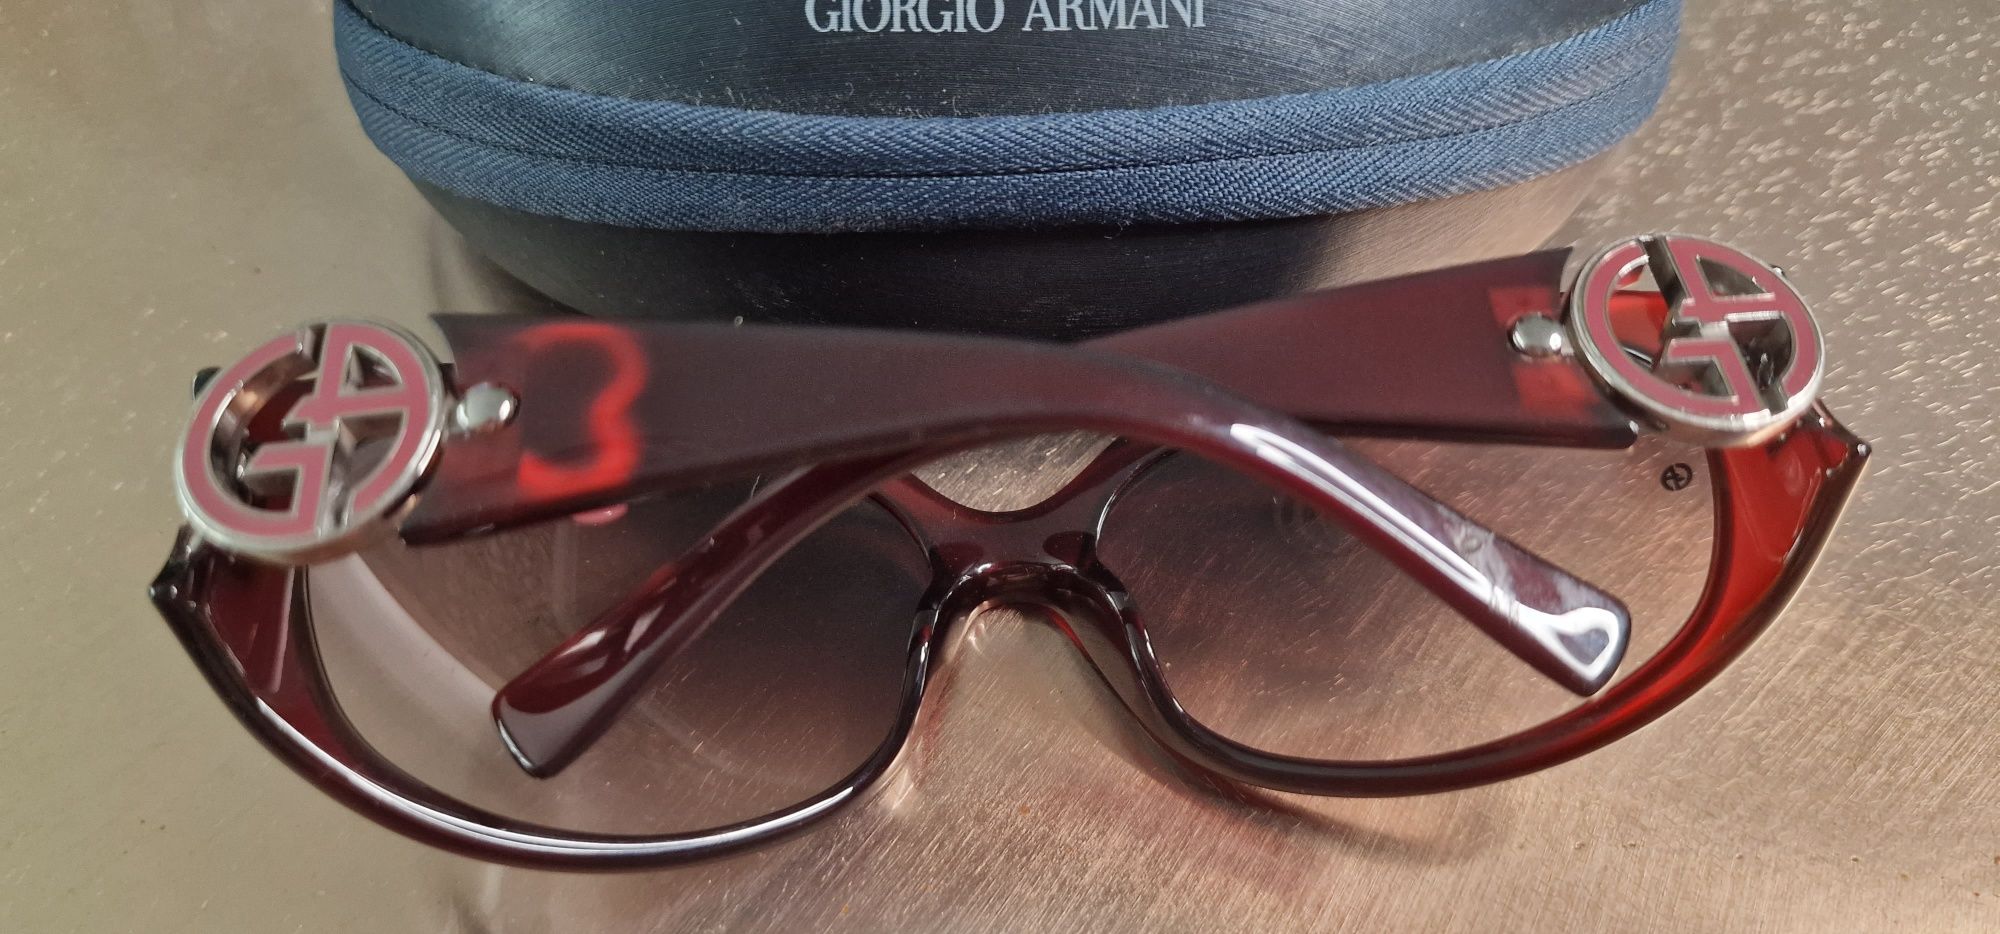 Oculos de sol Giorgio Armani